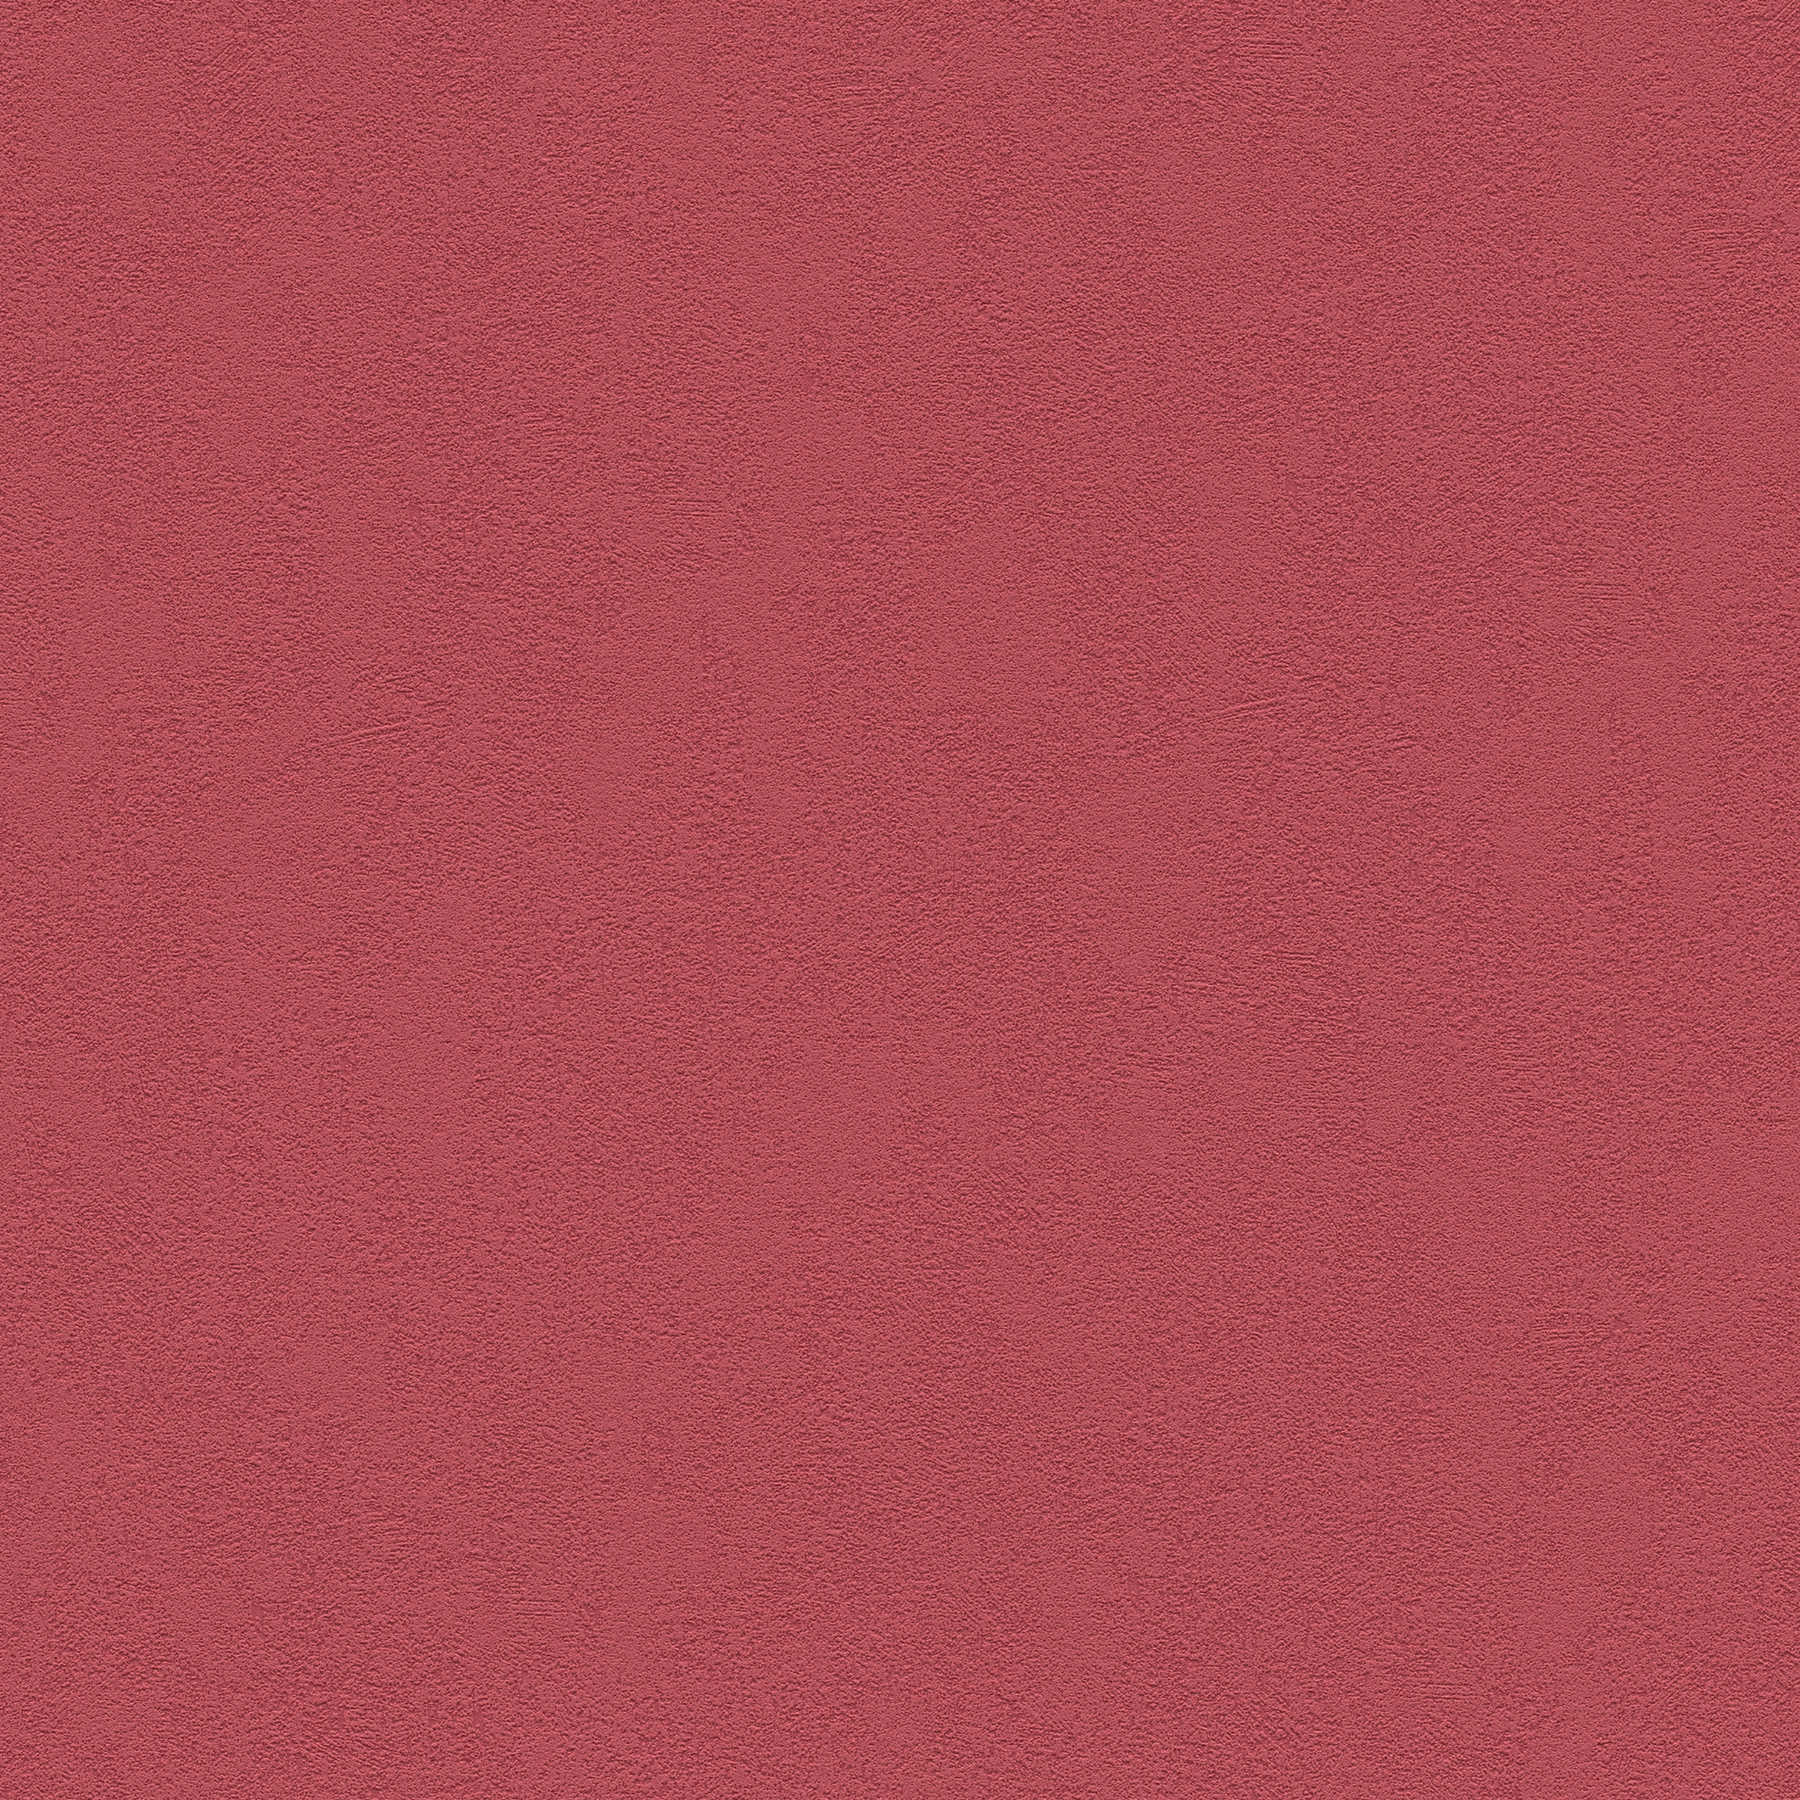 Papier peint intissé rouge foncé uni avec surface structurée
